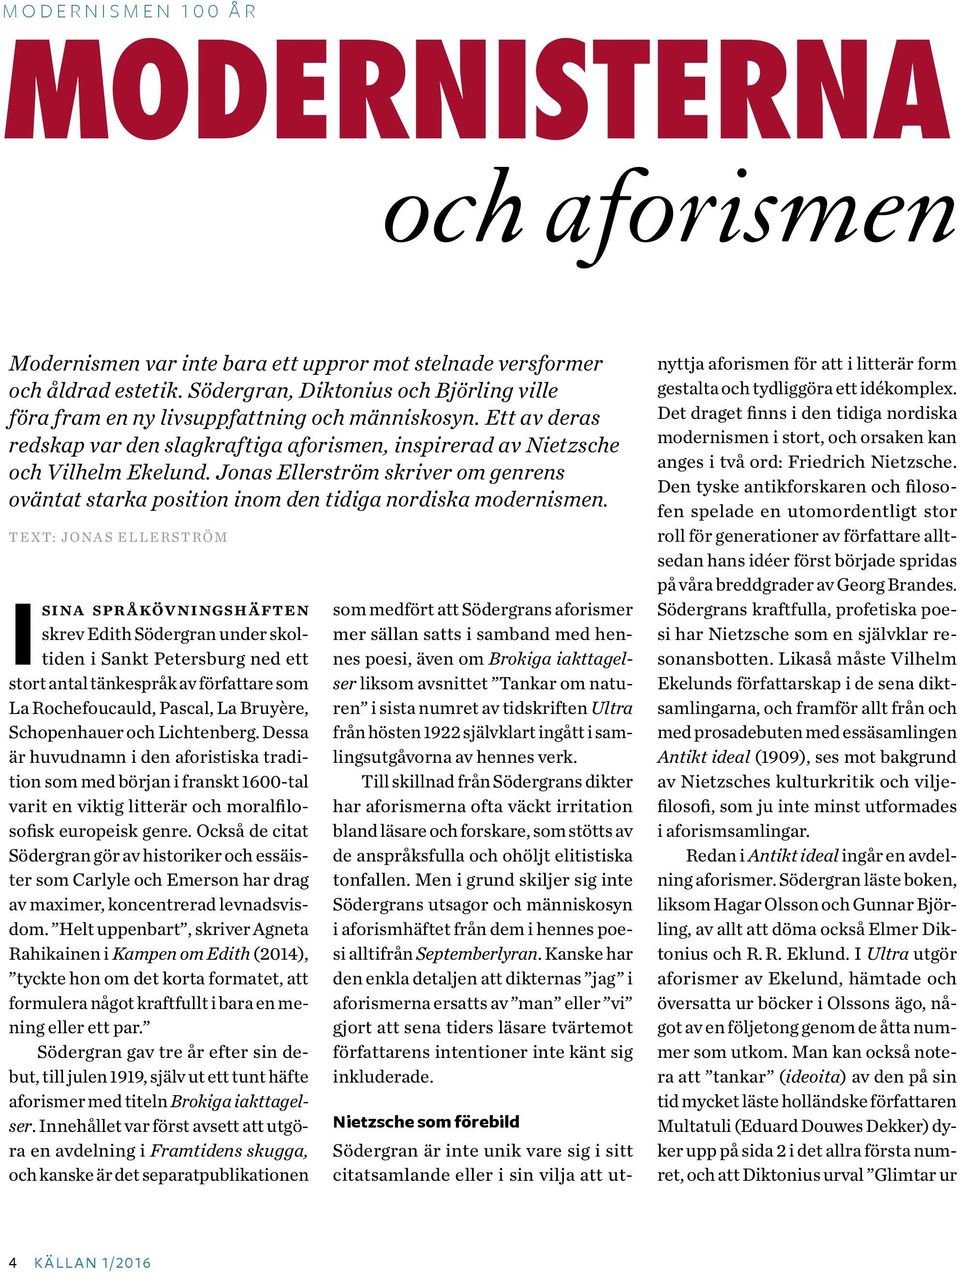 Jonas Ellerström skriver om genrens oväntat starka position inom den tidiga nordiska modernismen.